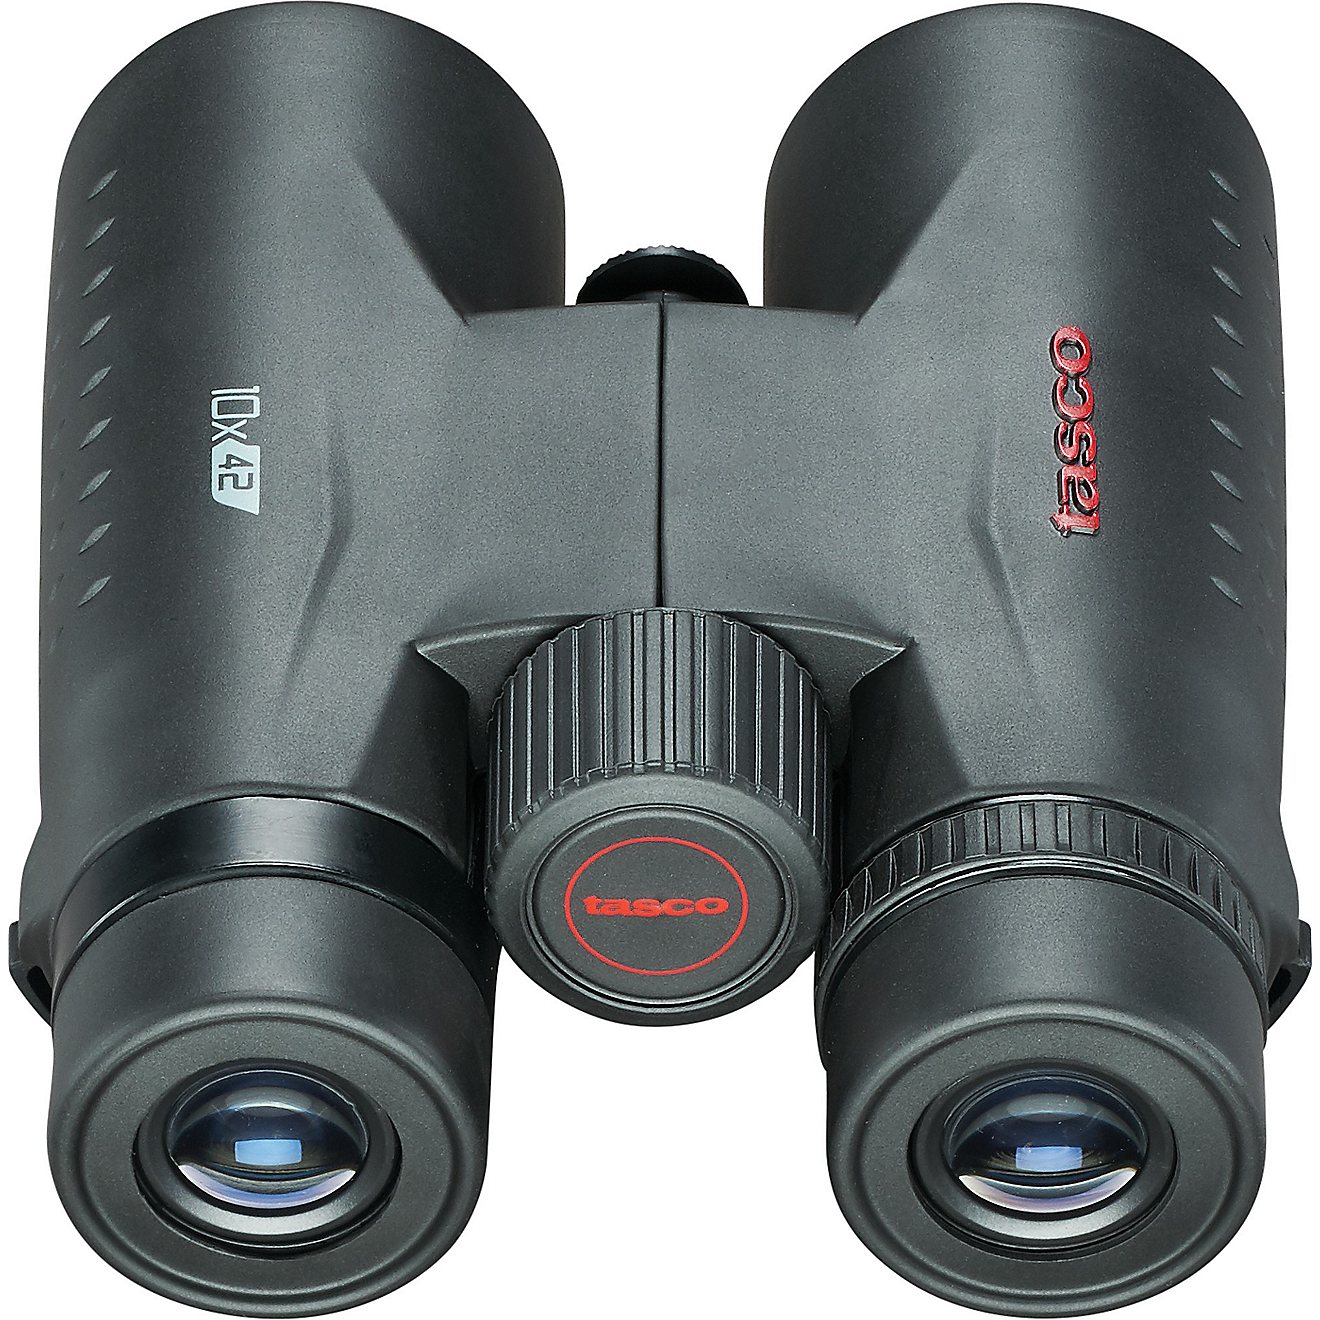 Tasco 10 x 42 Essential Binoculars                                                                                               - view number 2